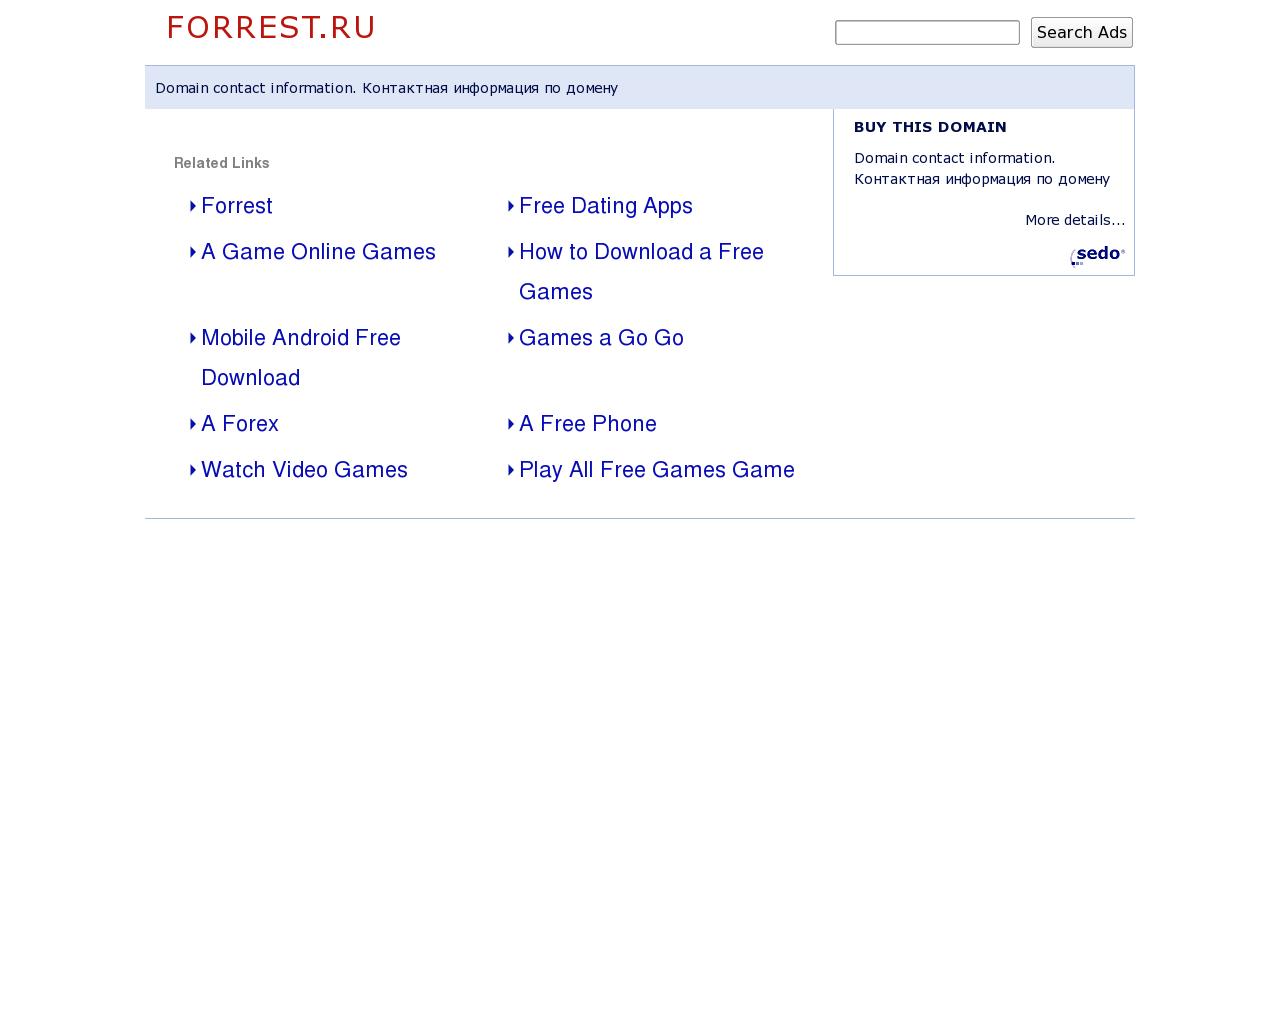 Изображение сайта forrest.ru в разрешении 1280x1024